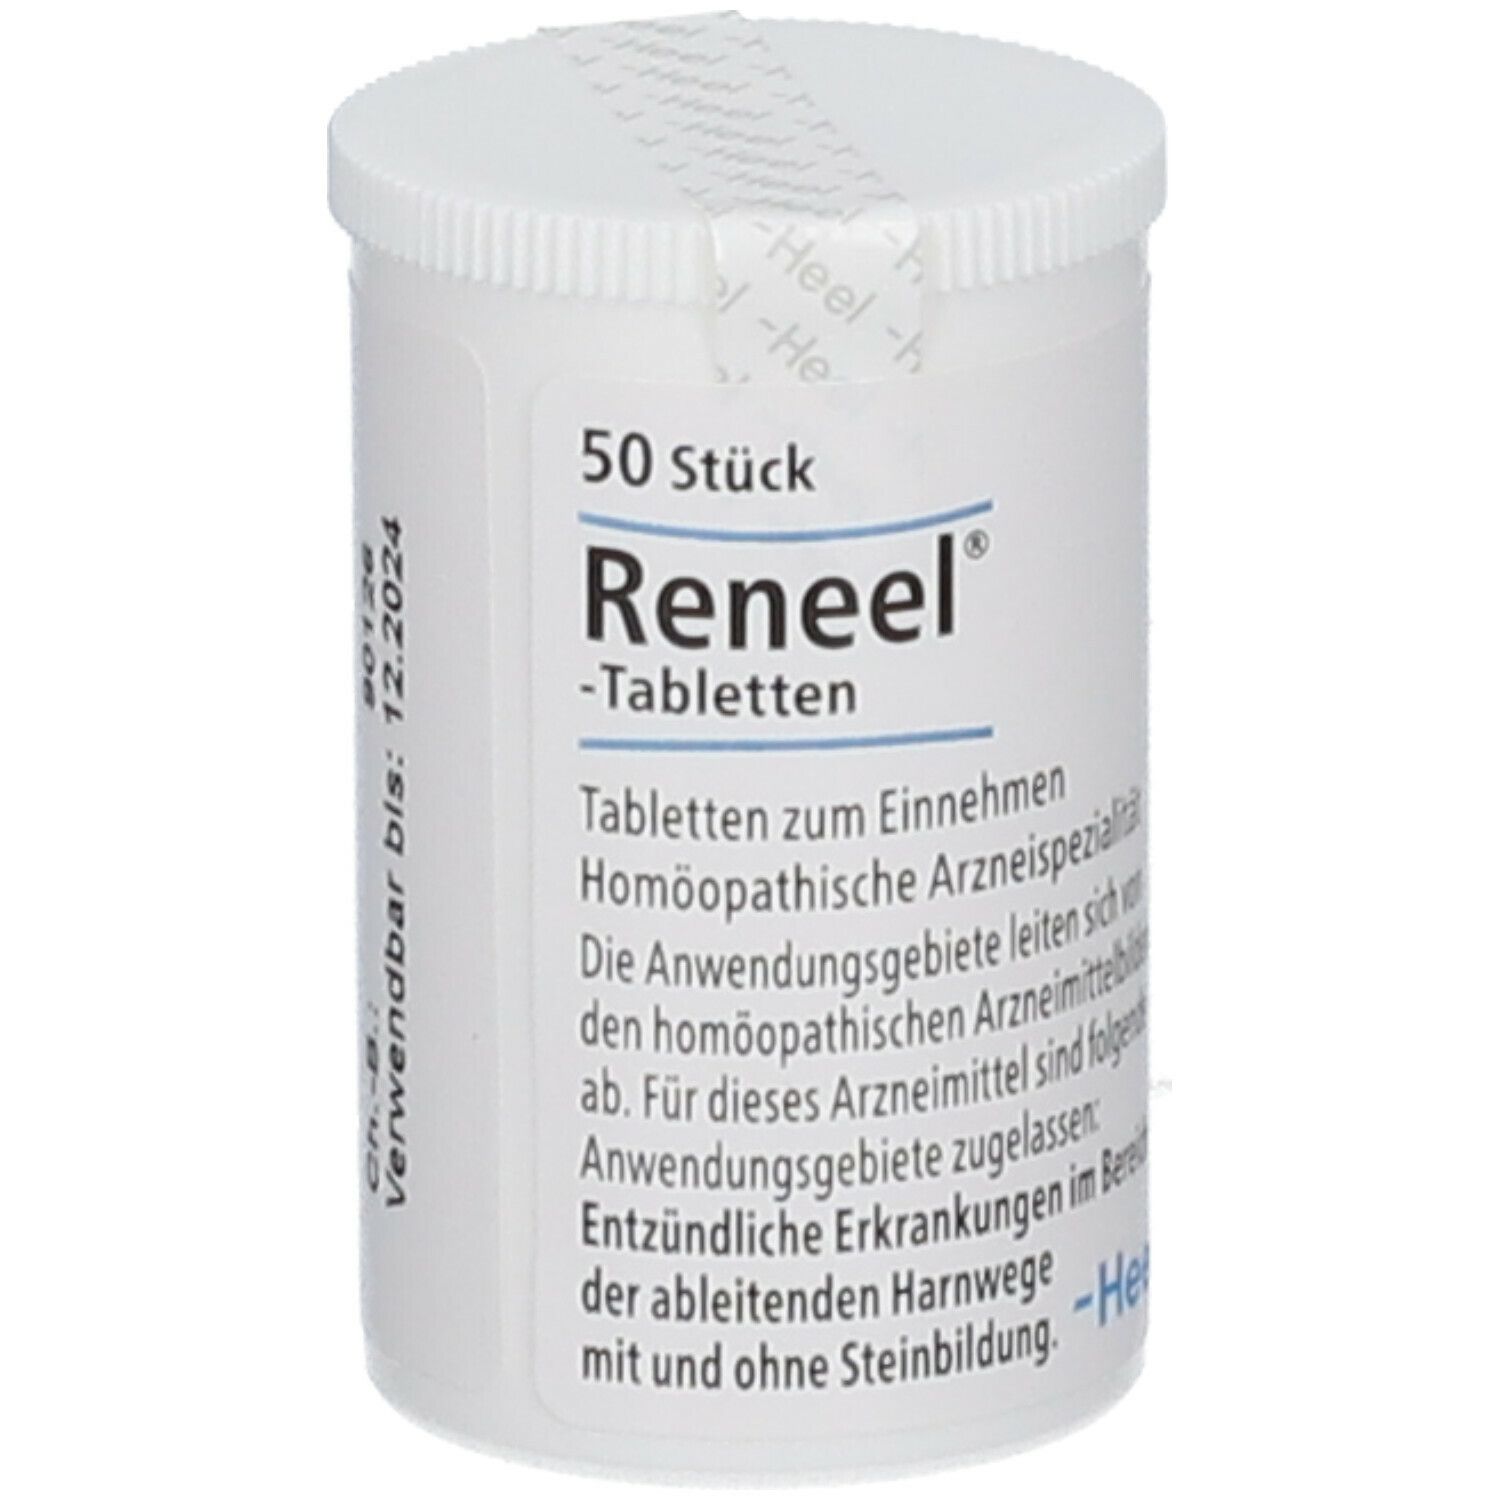 Reneel®-Tabletten